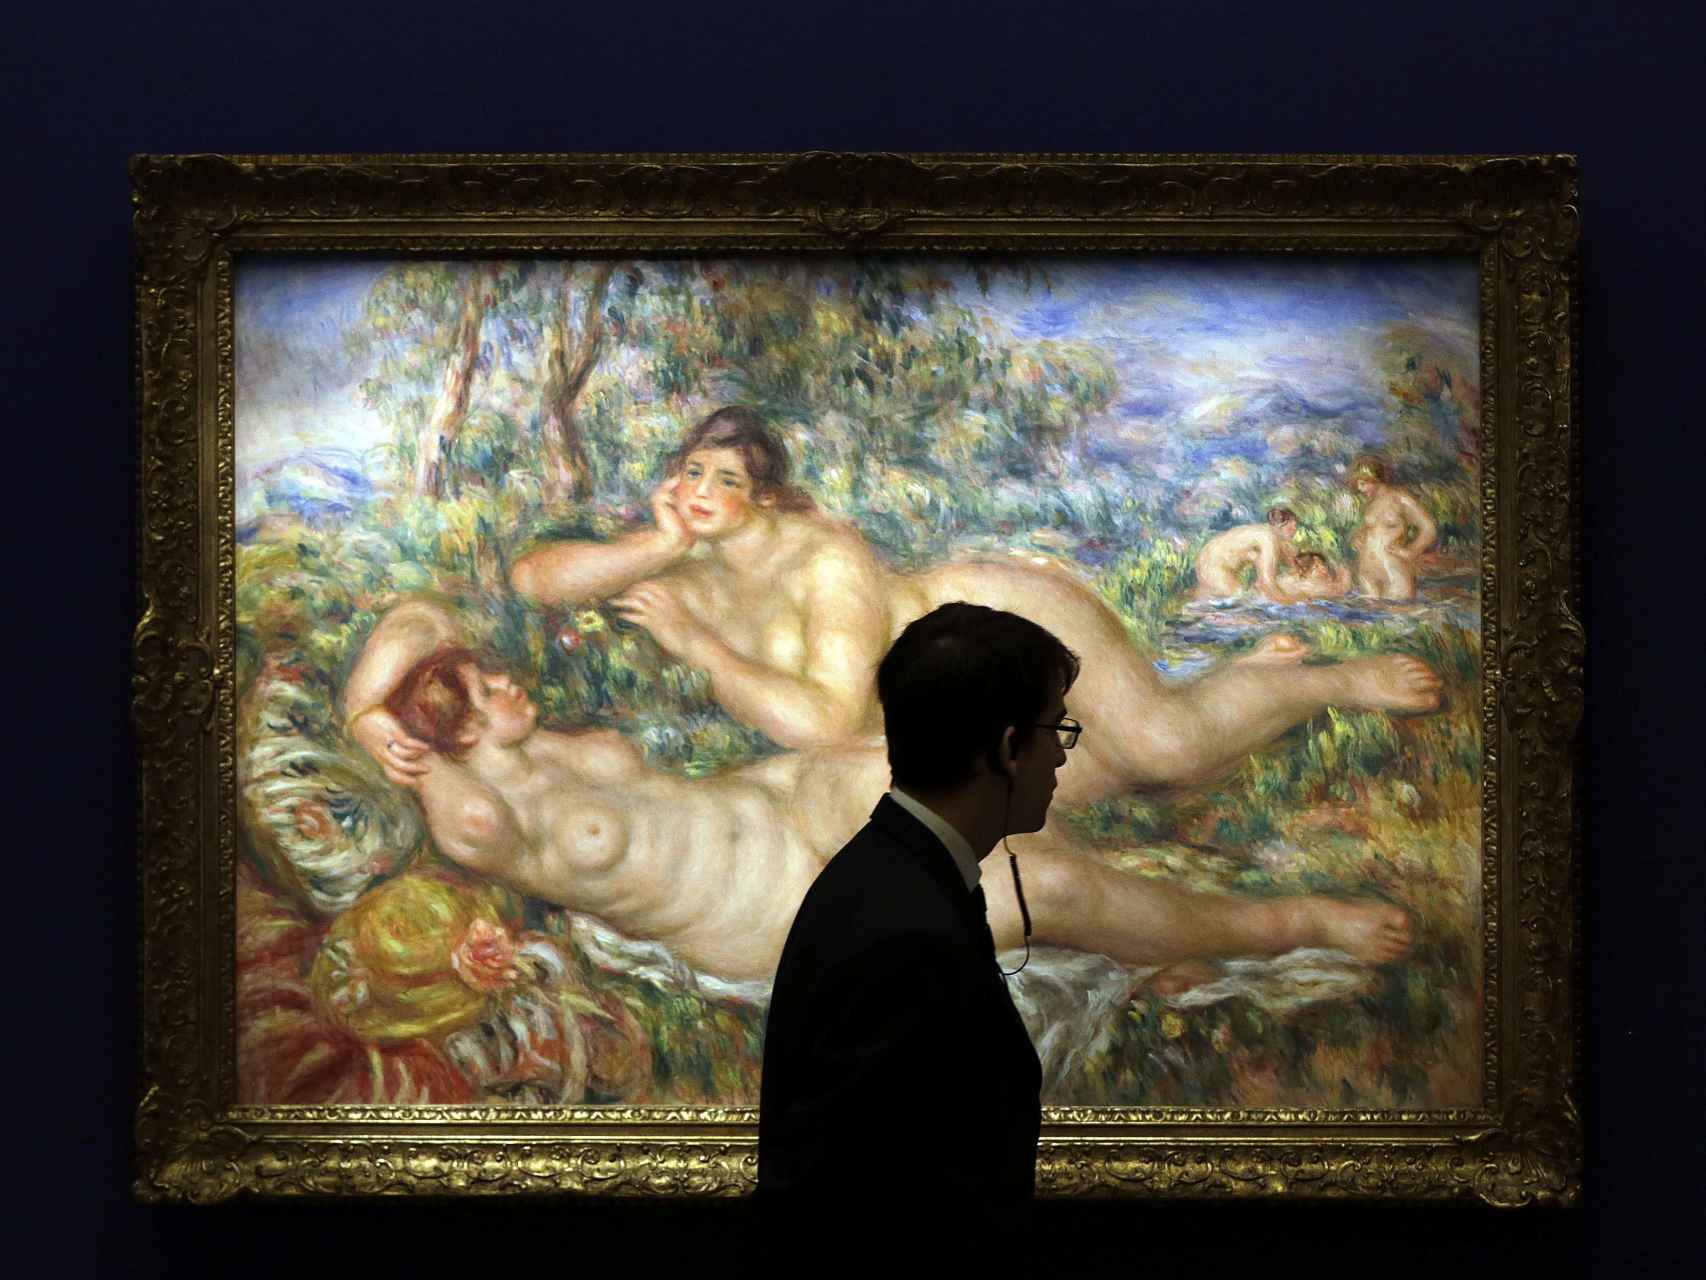 Un vigilante pasa ante la obra Les baigneuses (1919), de Auguste Renoir, que se muestra en la exposición.